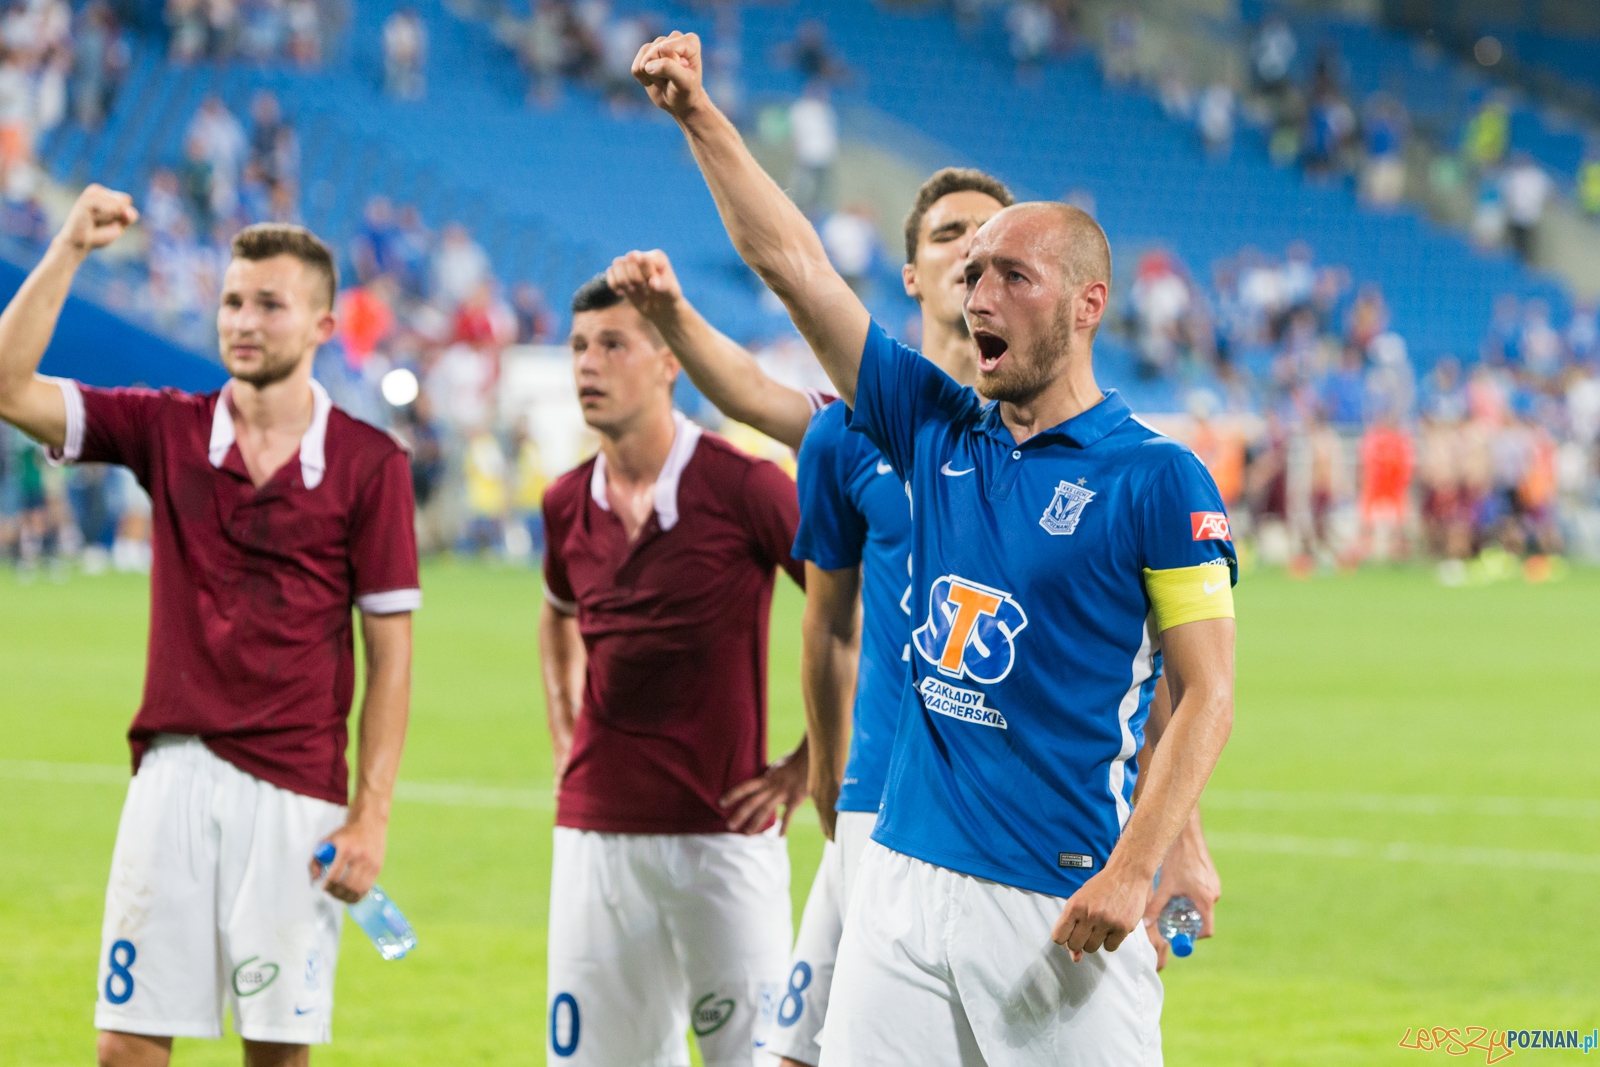 Eliminacje Ligii Mistrzów - Lech Poznań - FK Sarajevo  Foto: lepszyPOZNAN.pl / Piotr Rychter